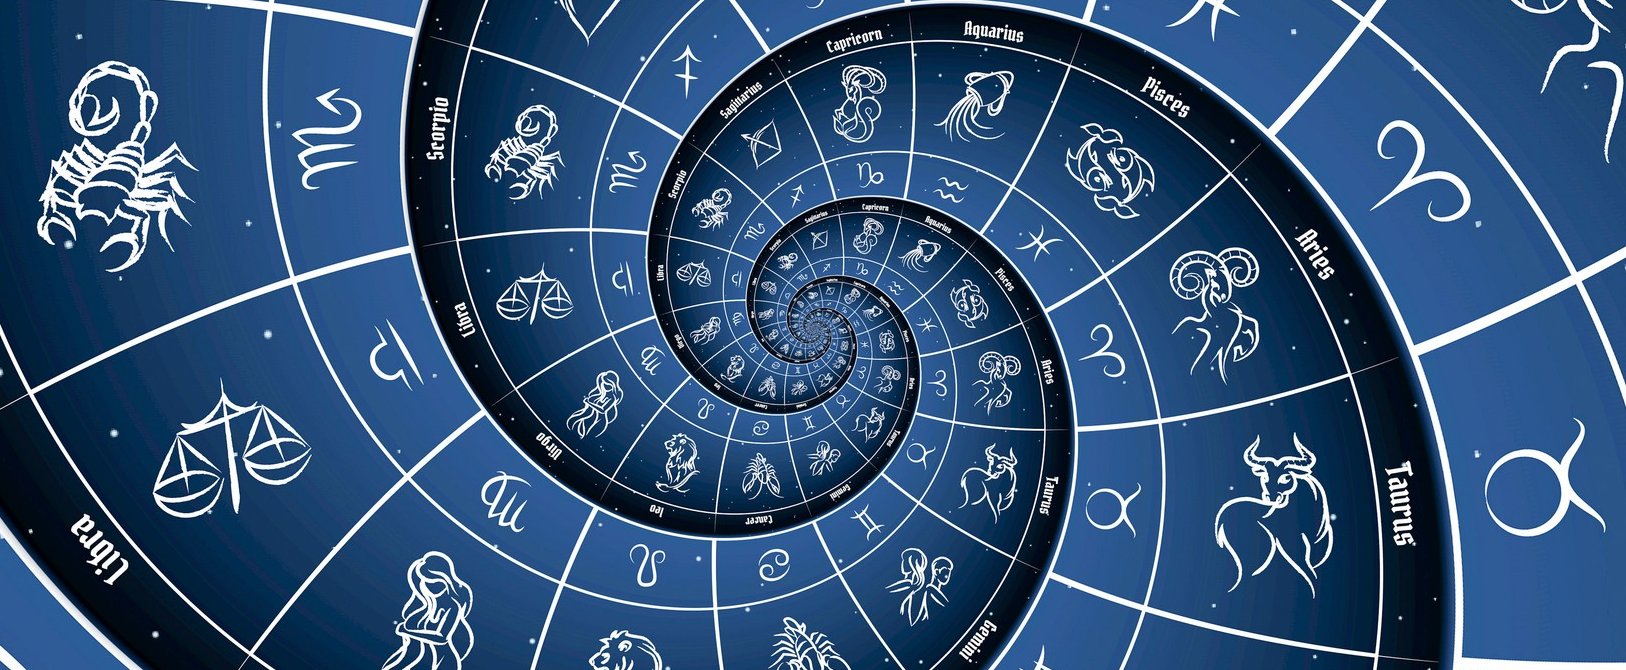 Napi horoszkóp - június 27: az Oroszlán nehéz nap elé néz, a Skorpió érzelmi hullámvölgyekkel találhatja szemben magát